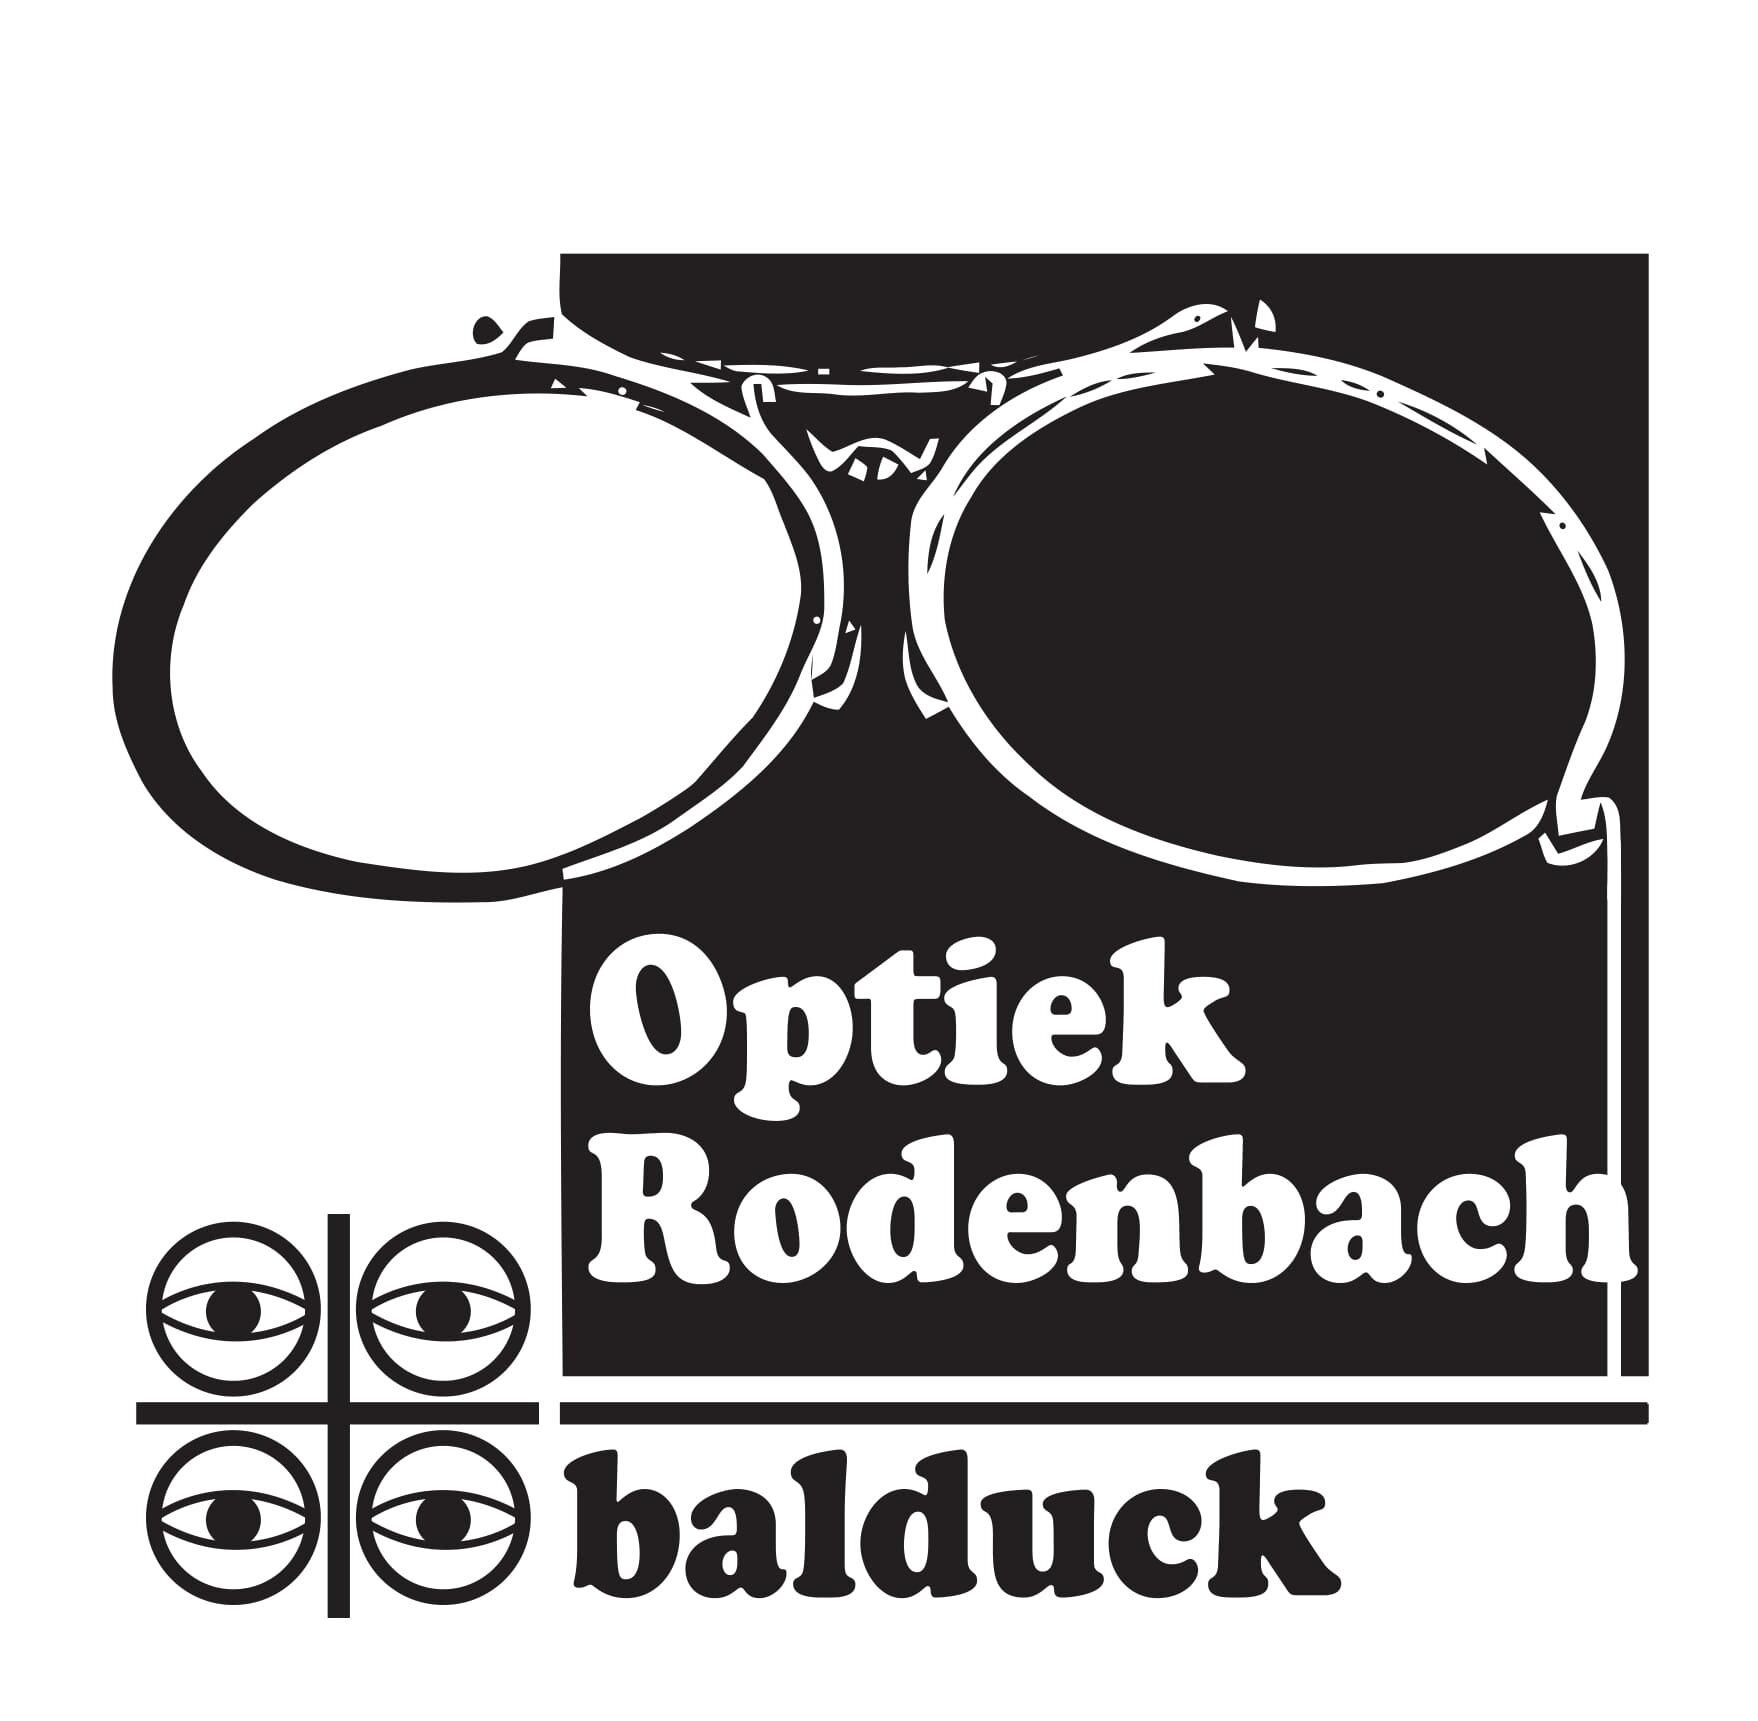 Optiek Rodenbach Balduck